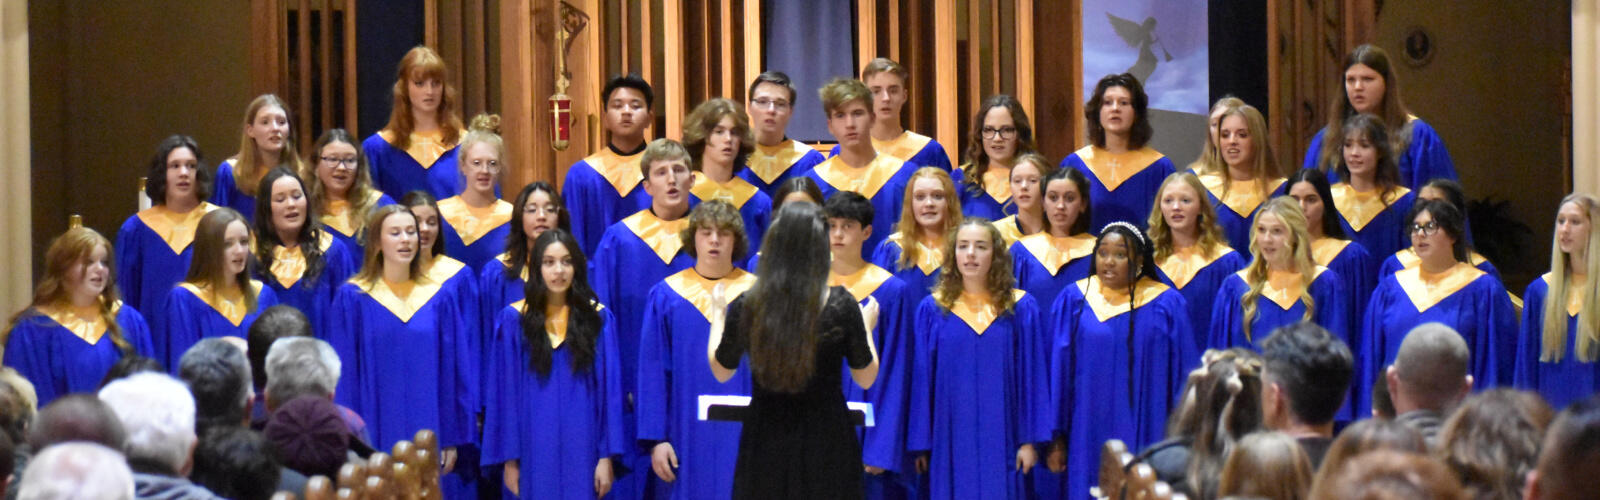 Xavier High School Choir Concert for Christmas